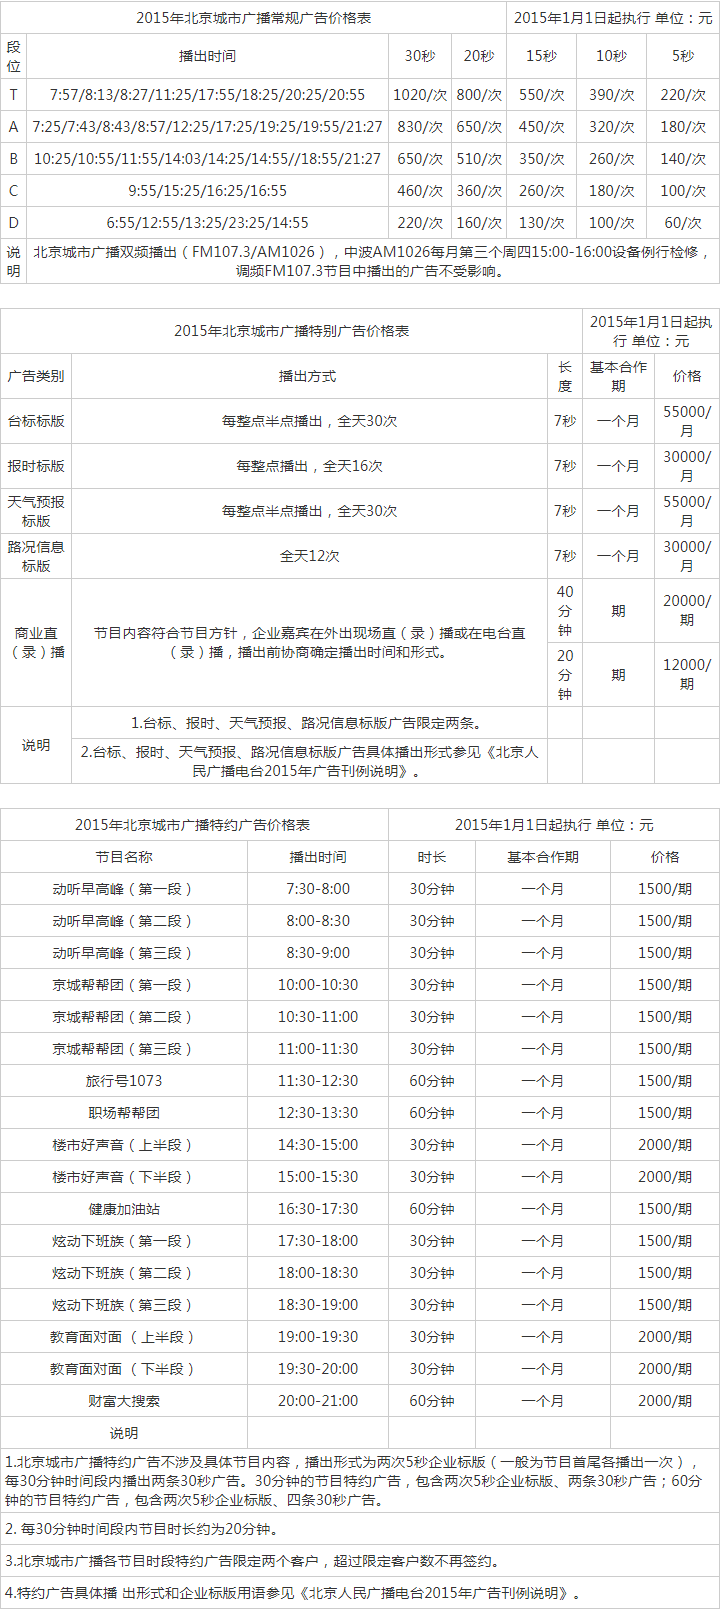 2015北京人民广播电台城市管理频率 FM107.3广告报价表.png